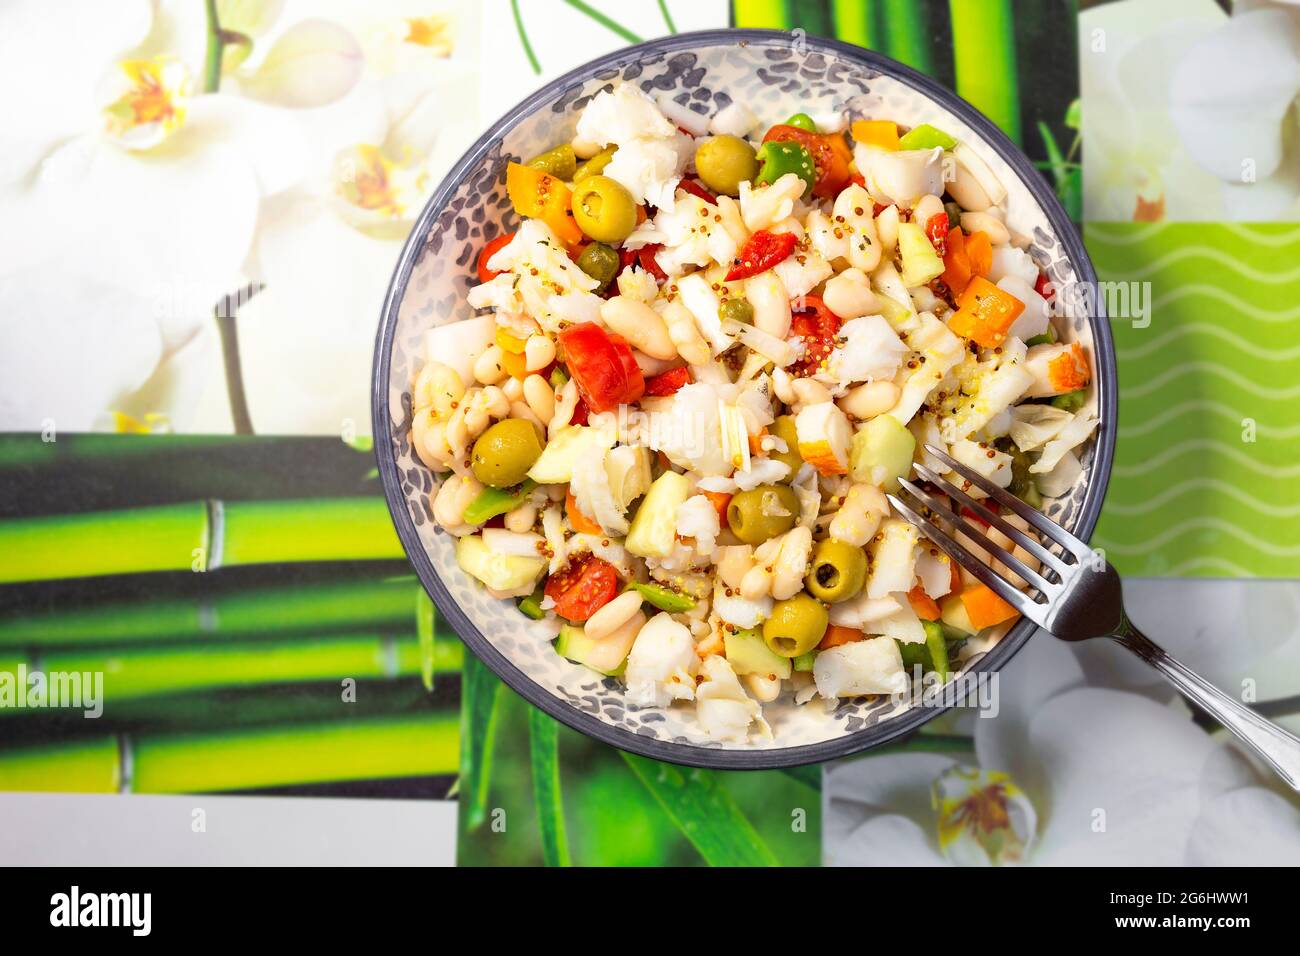 gros plan d'une salade de haricots blancs avec de la morue dans une assiette ronde Banque D'Images